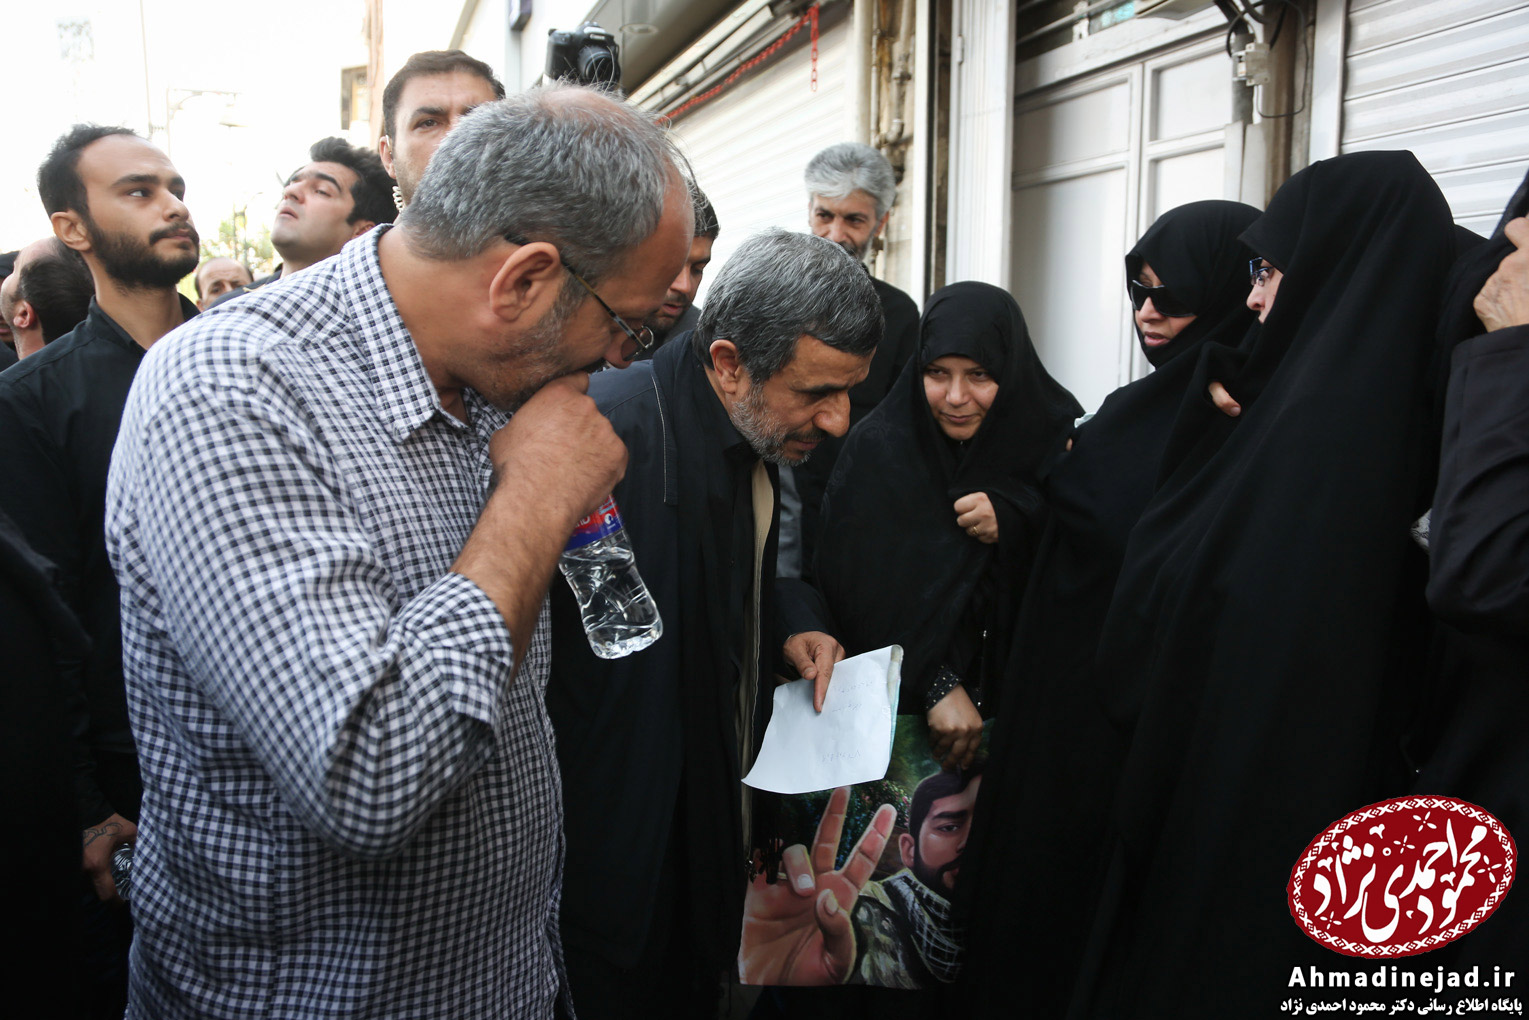 احمدی نژاد در مراسم تشییع شهید حججی + تصاویر